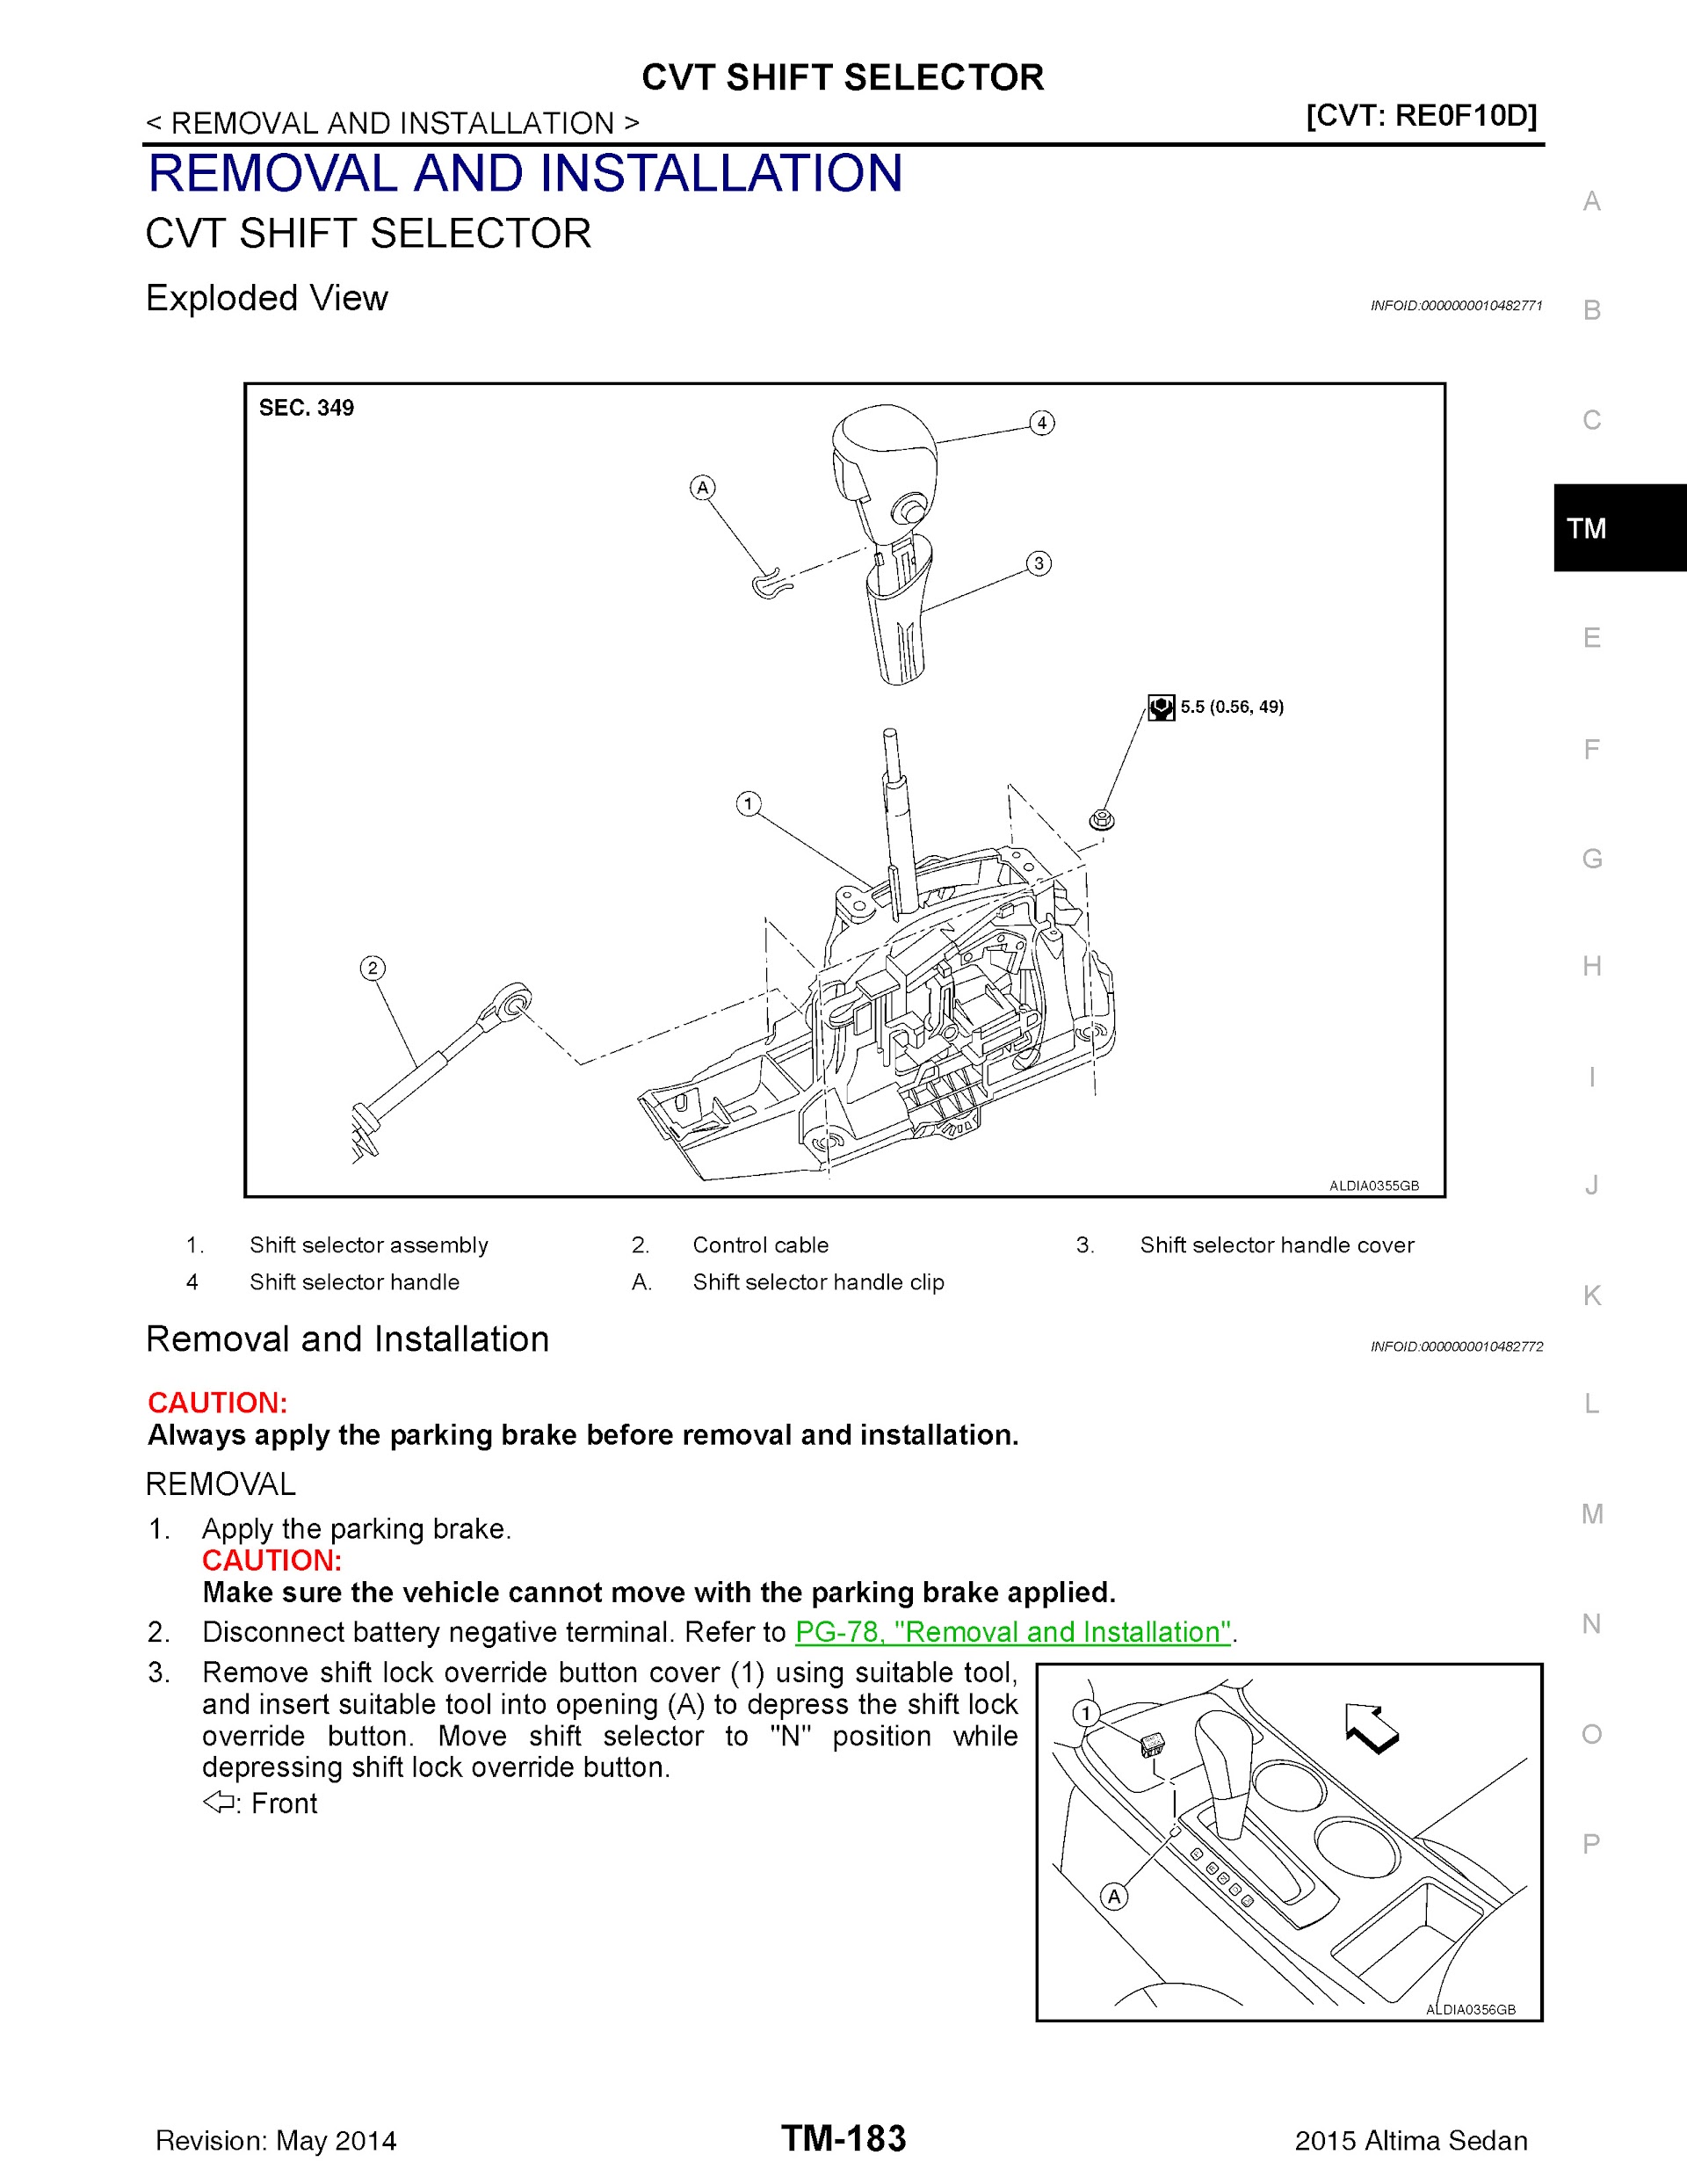 CONTENTS: 2015 Nissan Altima Repair Manual CVT Shift Selector